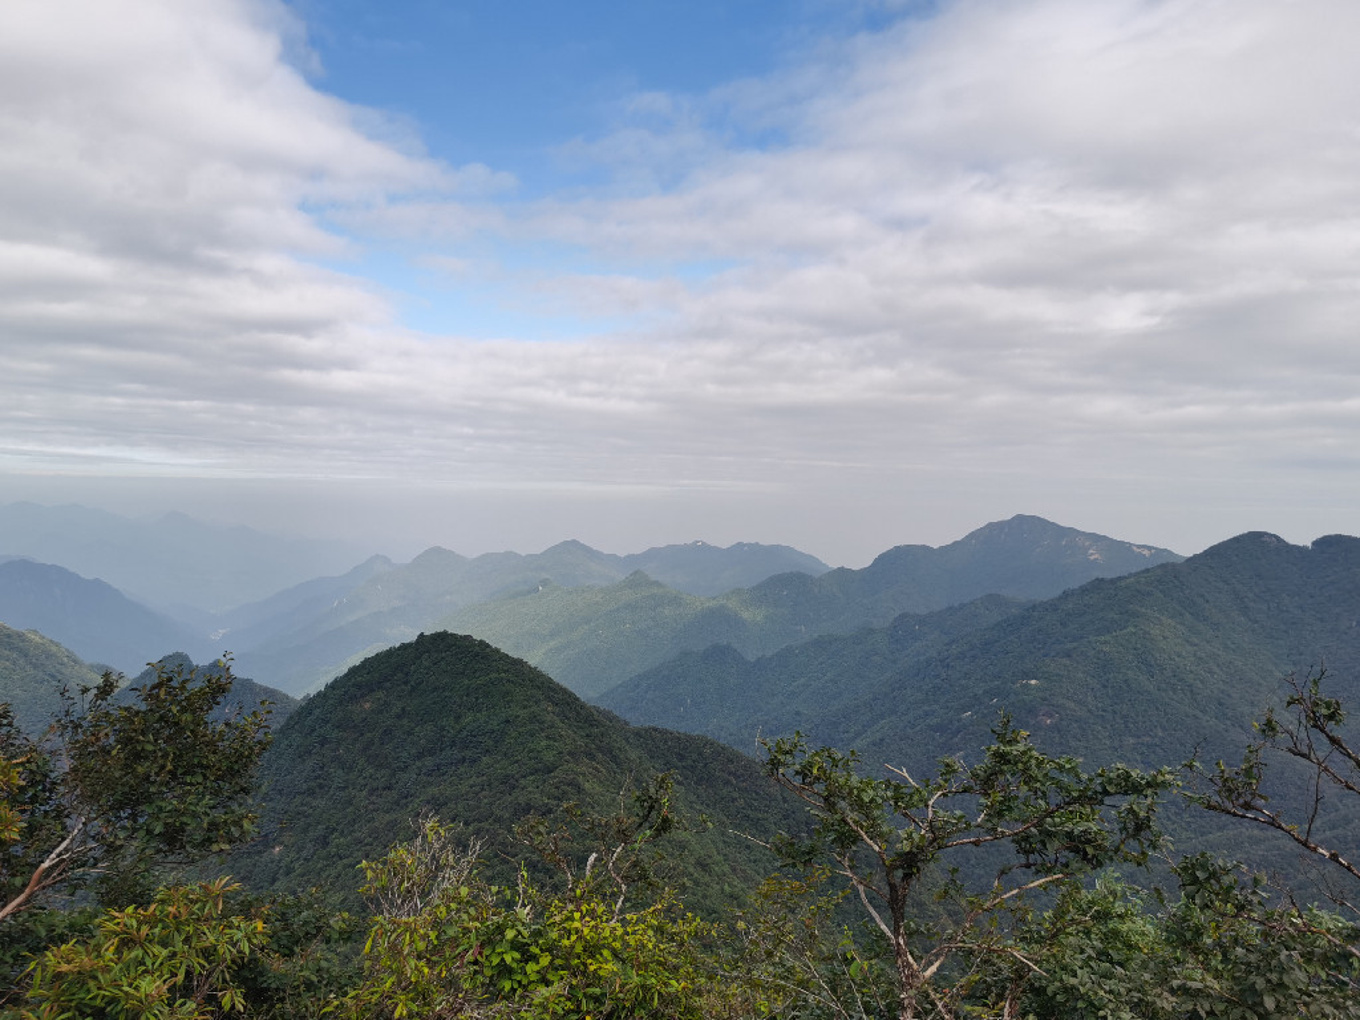 【高清图】湖南郴州--莽山地质公园五指峰2（手机版）-中关村在线摄影论坛